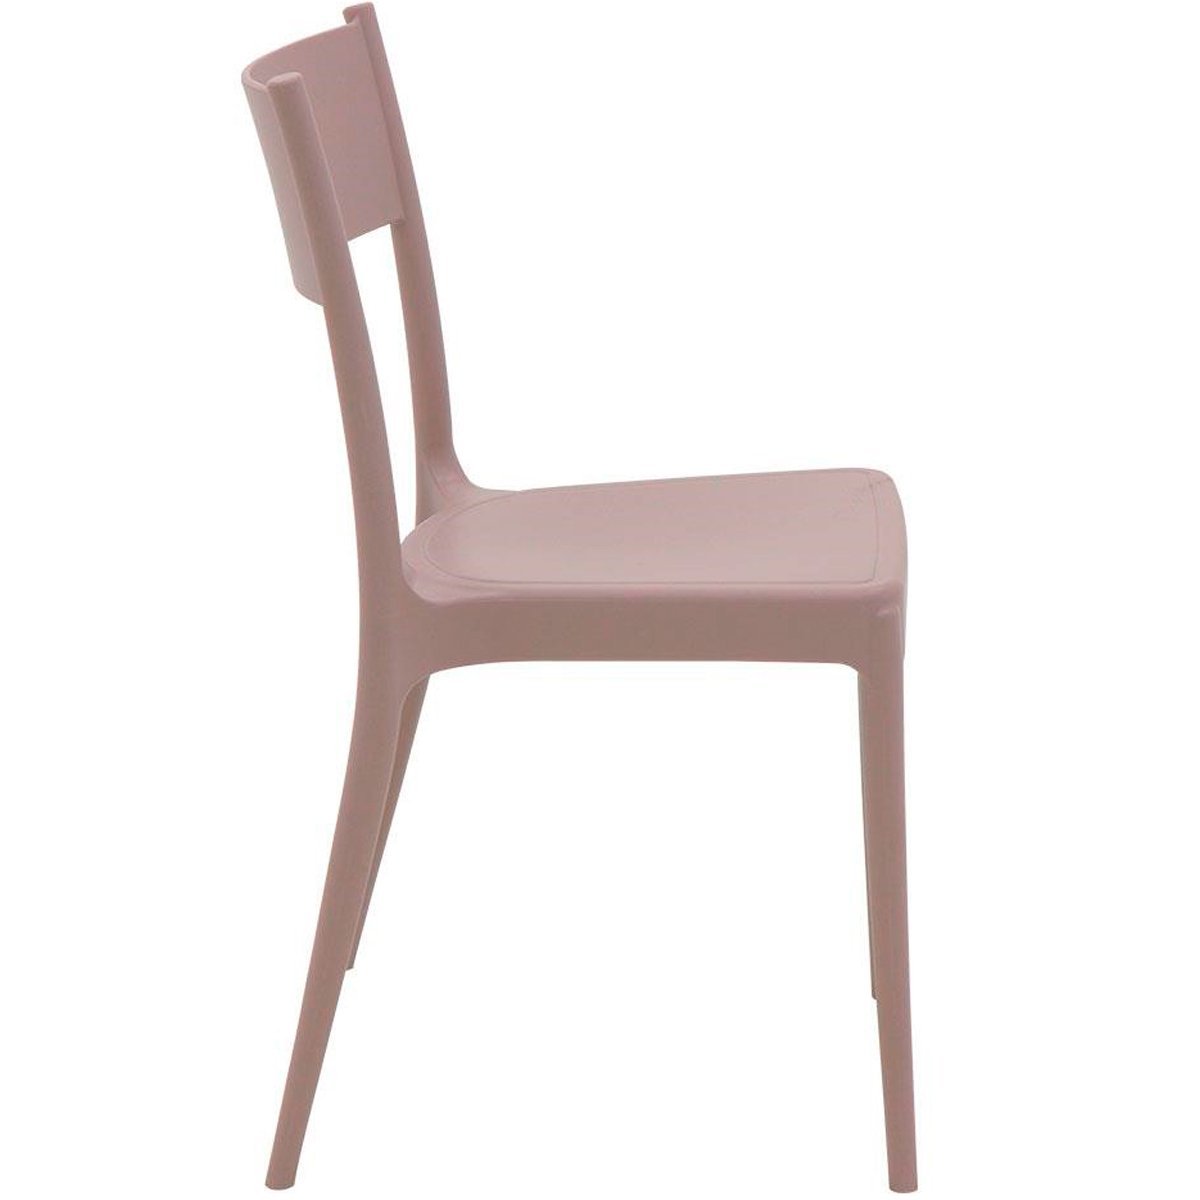 Conjunto 4 Cadeiras de Polipropileno e Fibra de Vidro Summa Eco Diana - Tramontina - Camurça 92030/4 - 3